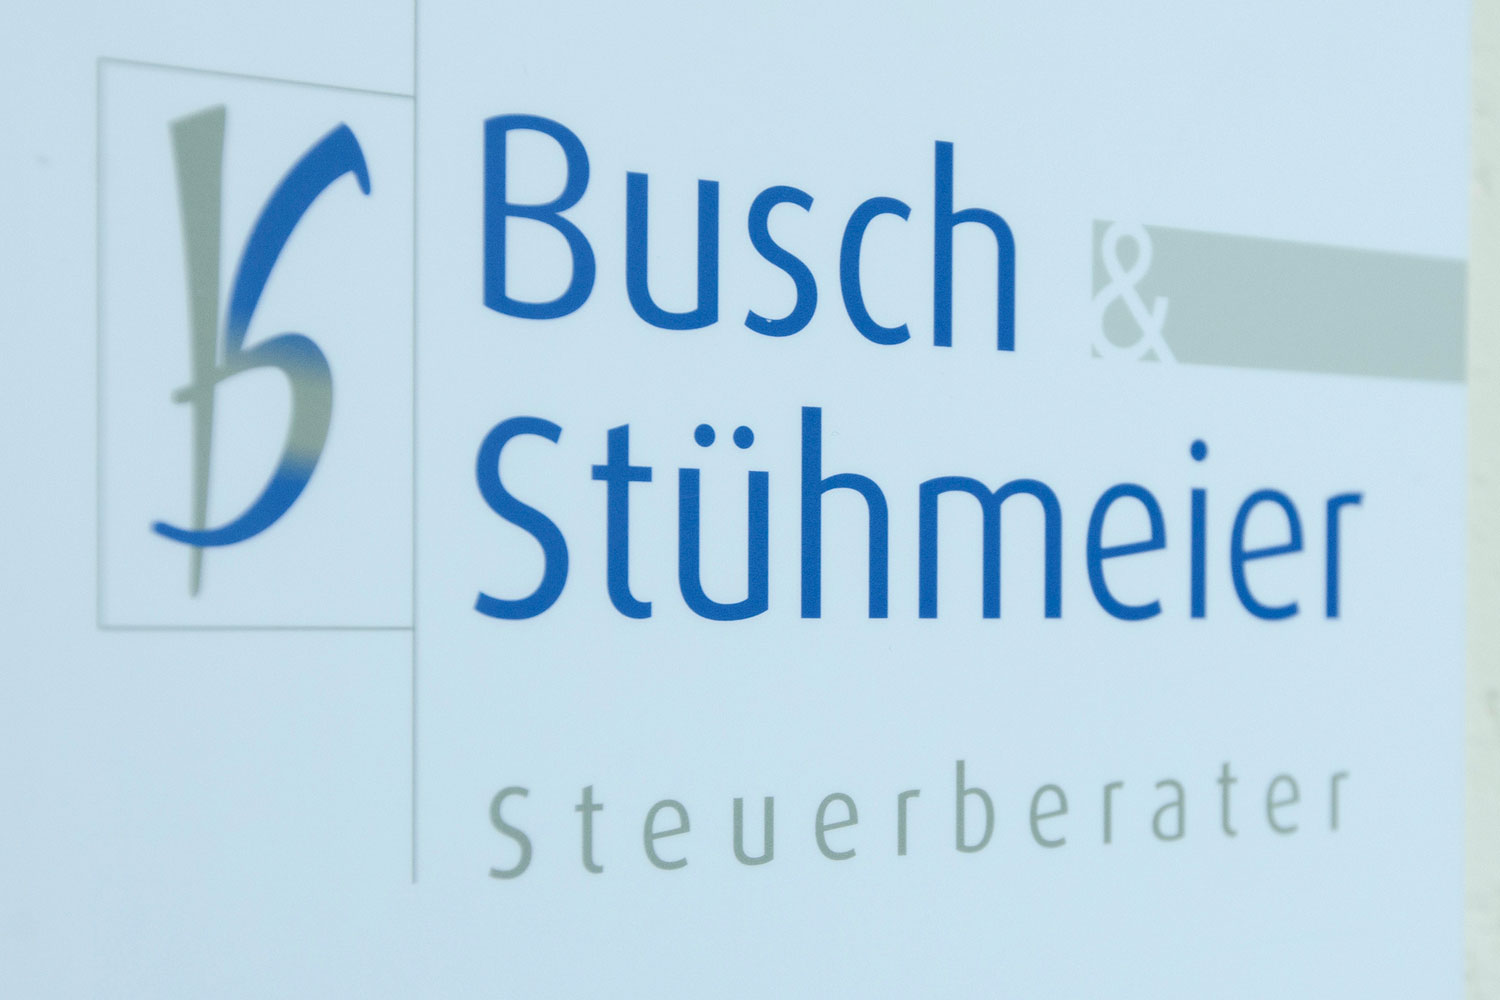 Busch & Stühmeier in Bad Oeynhausen